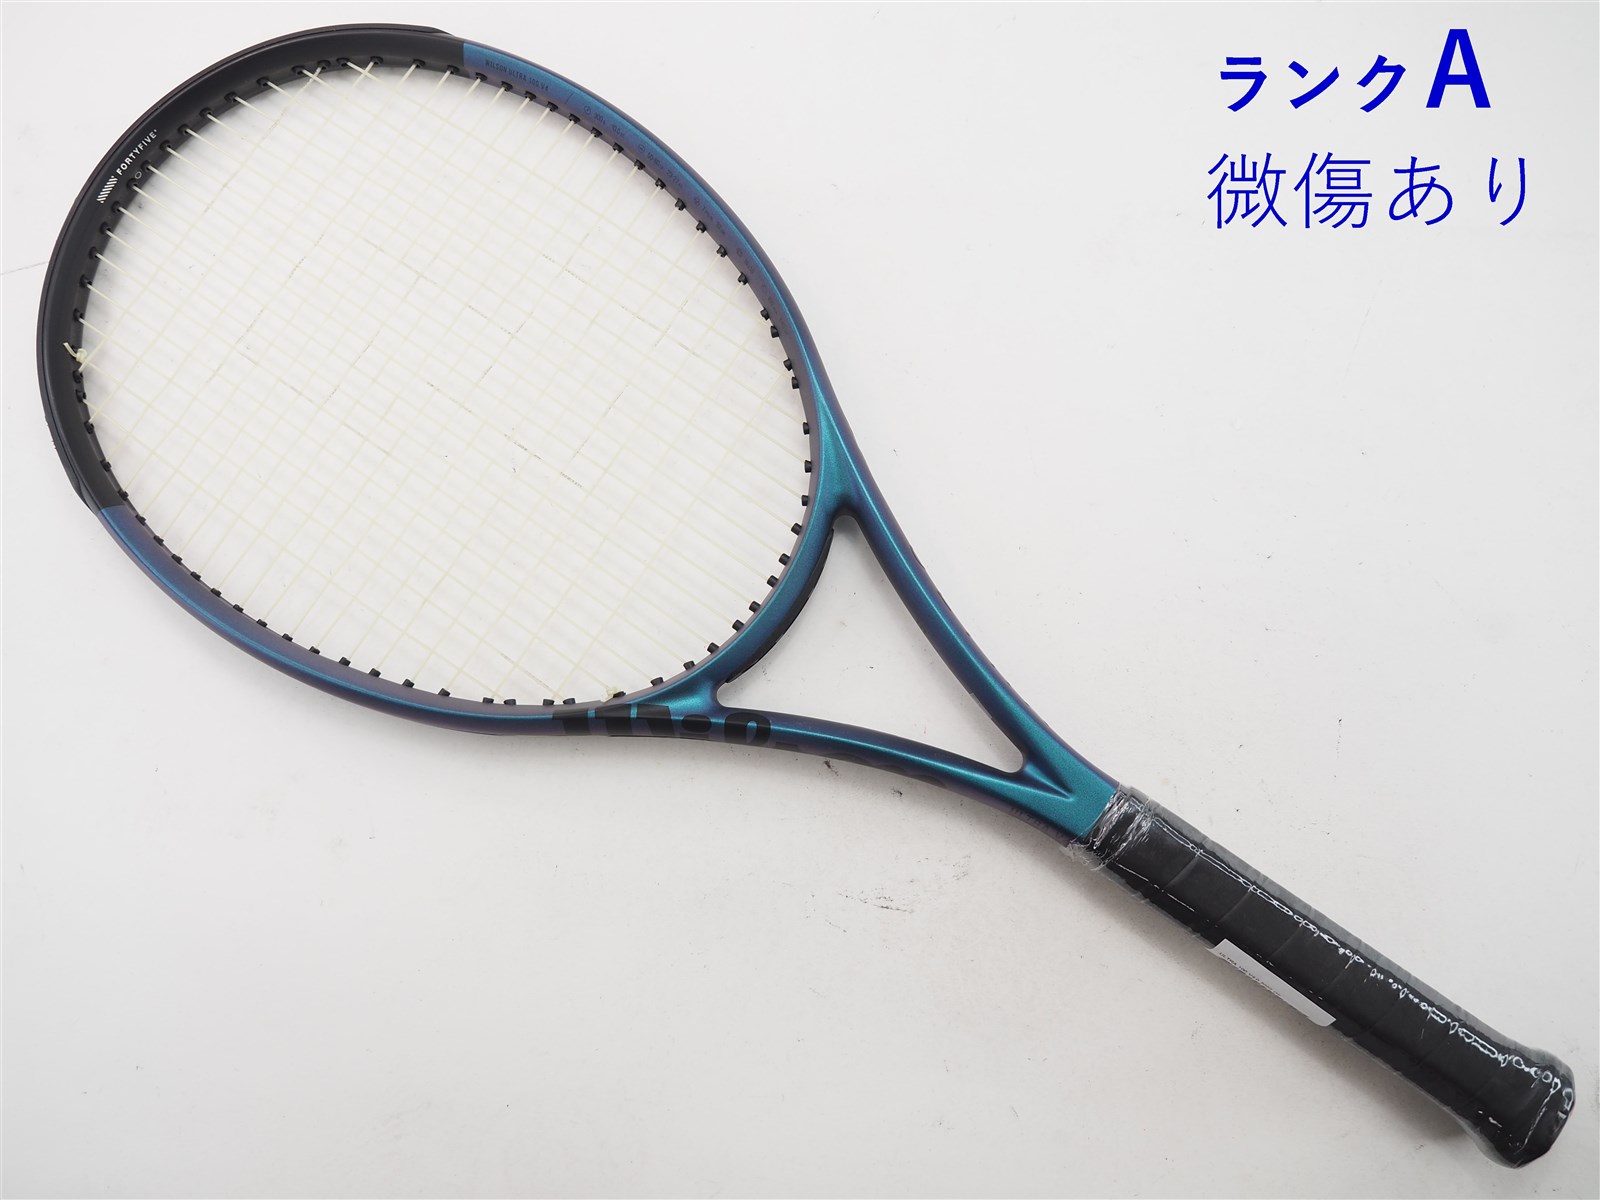 270インチフレーム厚テニスラケット ウィルソン ウルトラ 100 